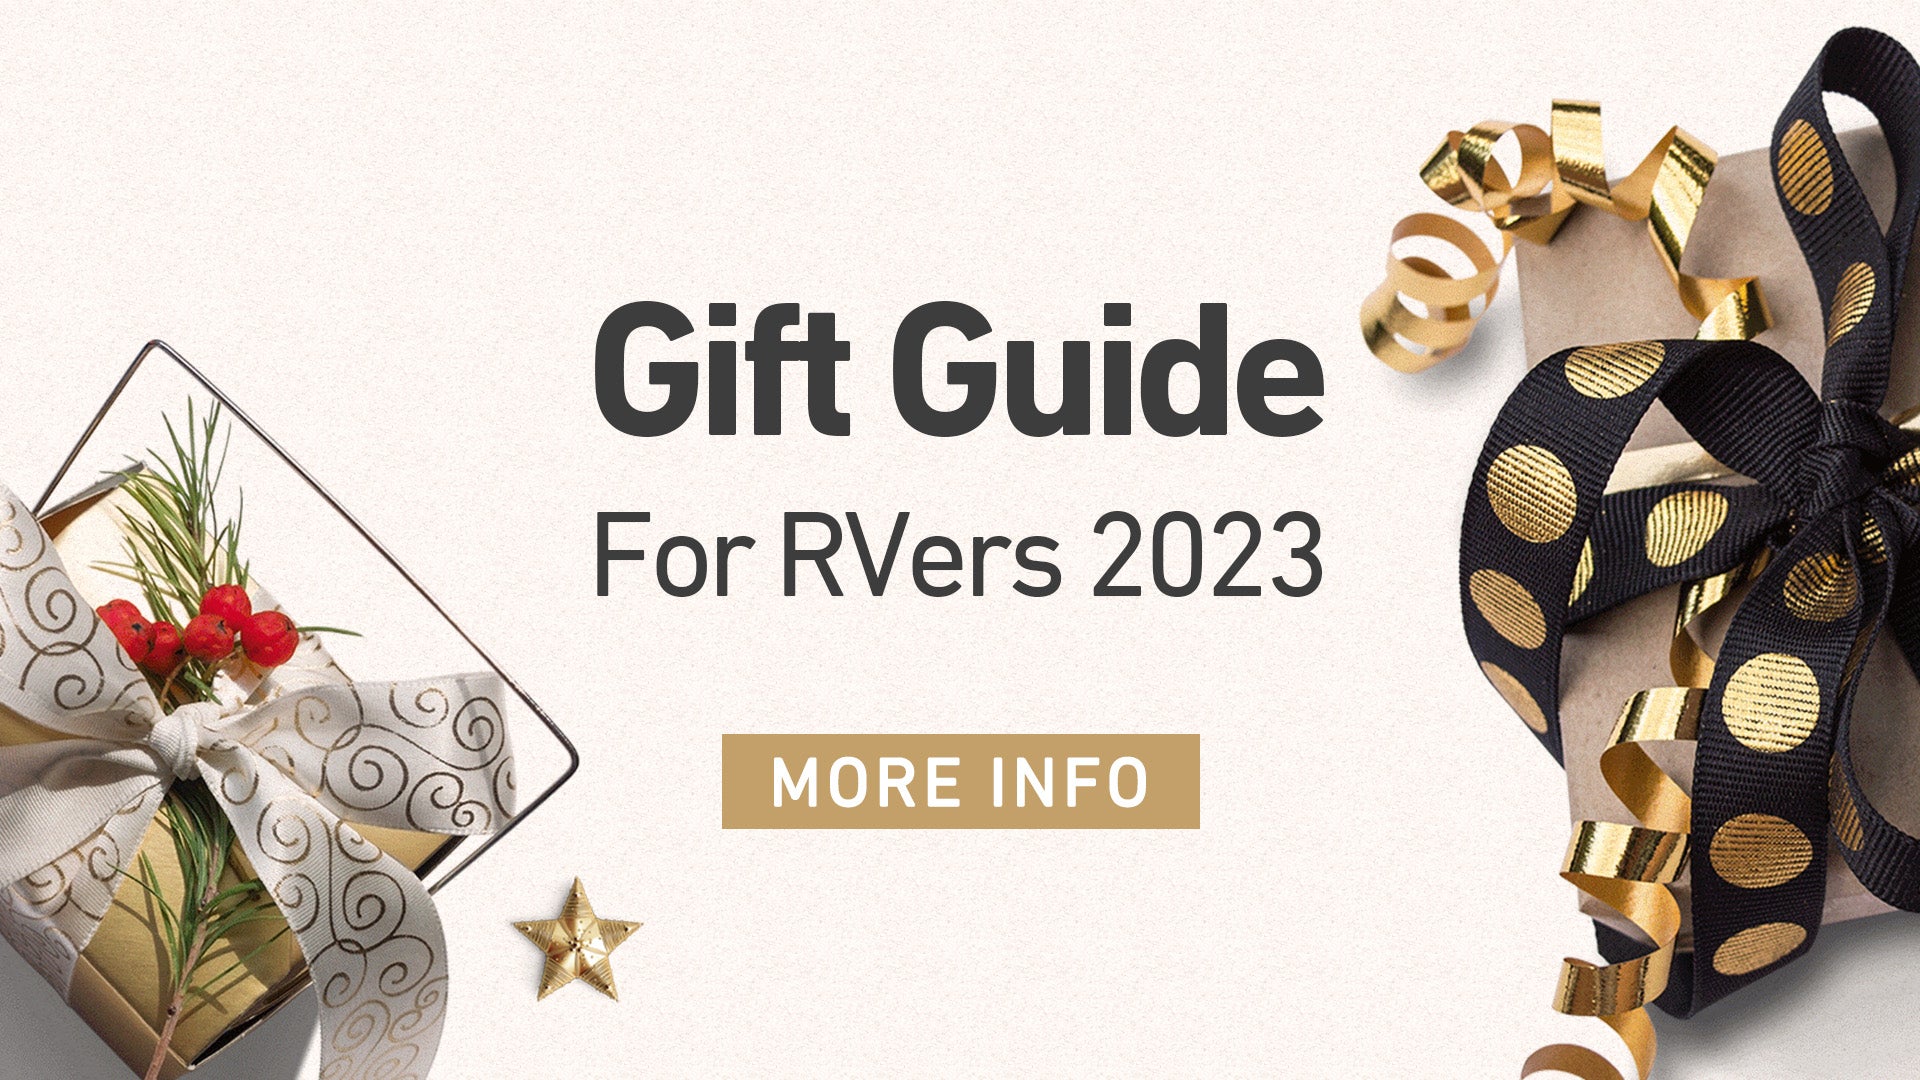 Fogatti's Gift Guide for RVers 2023